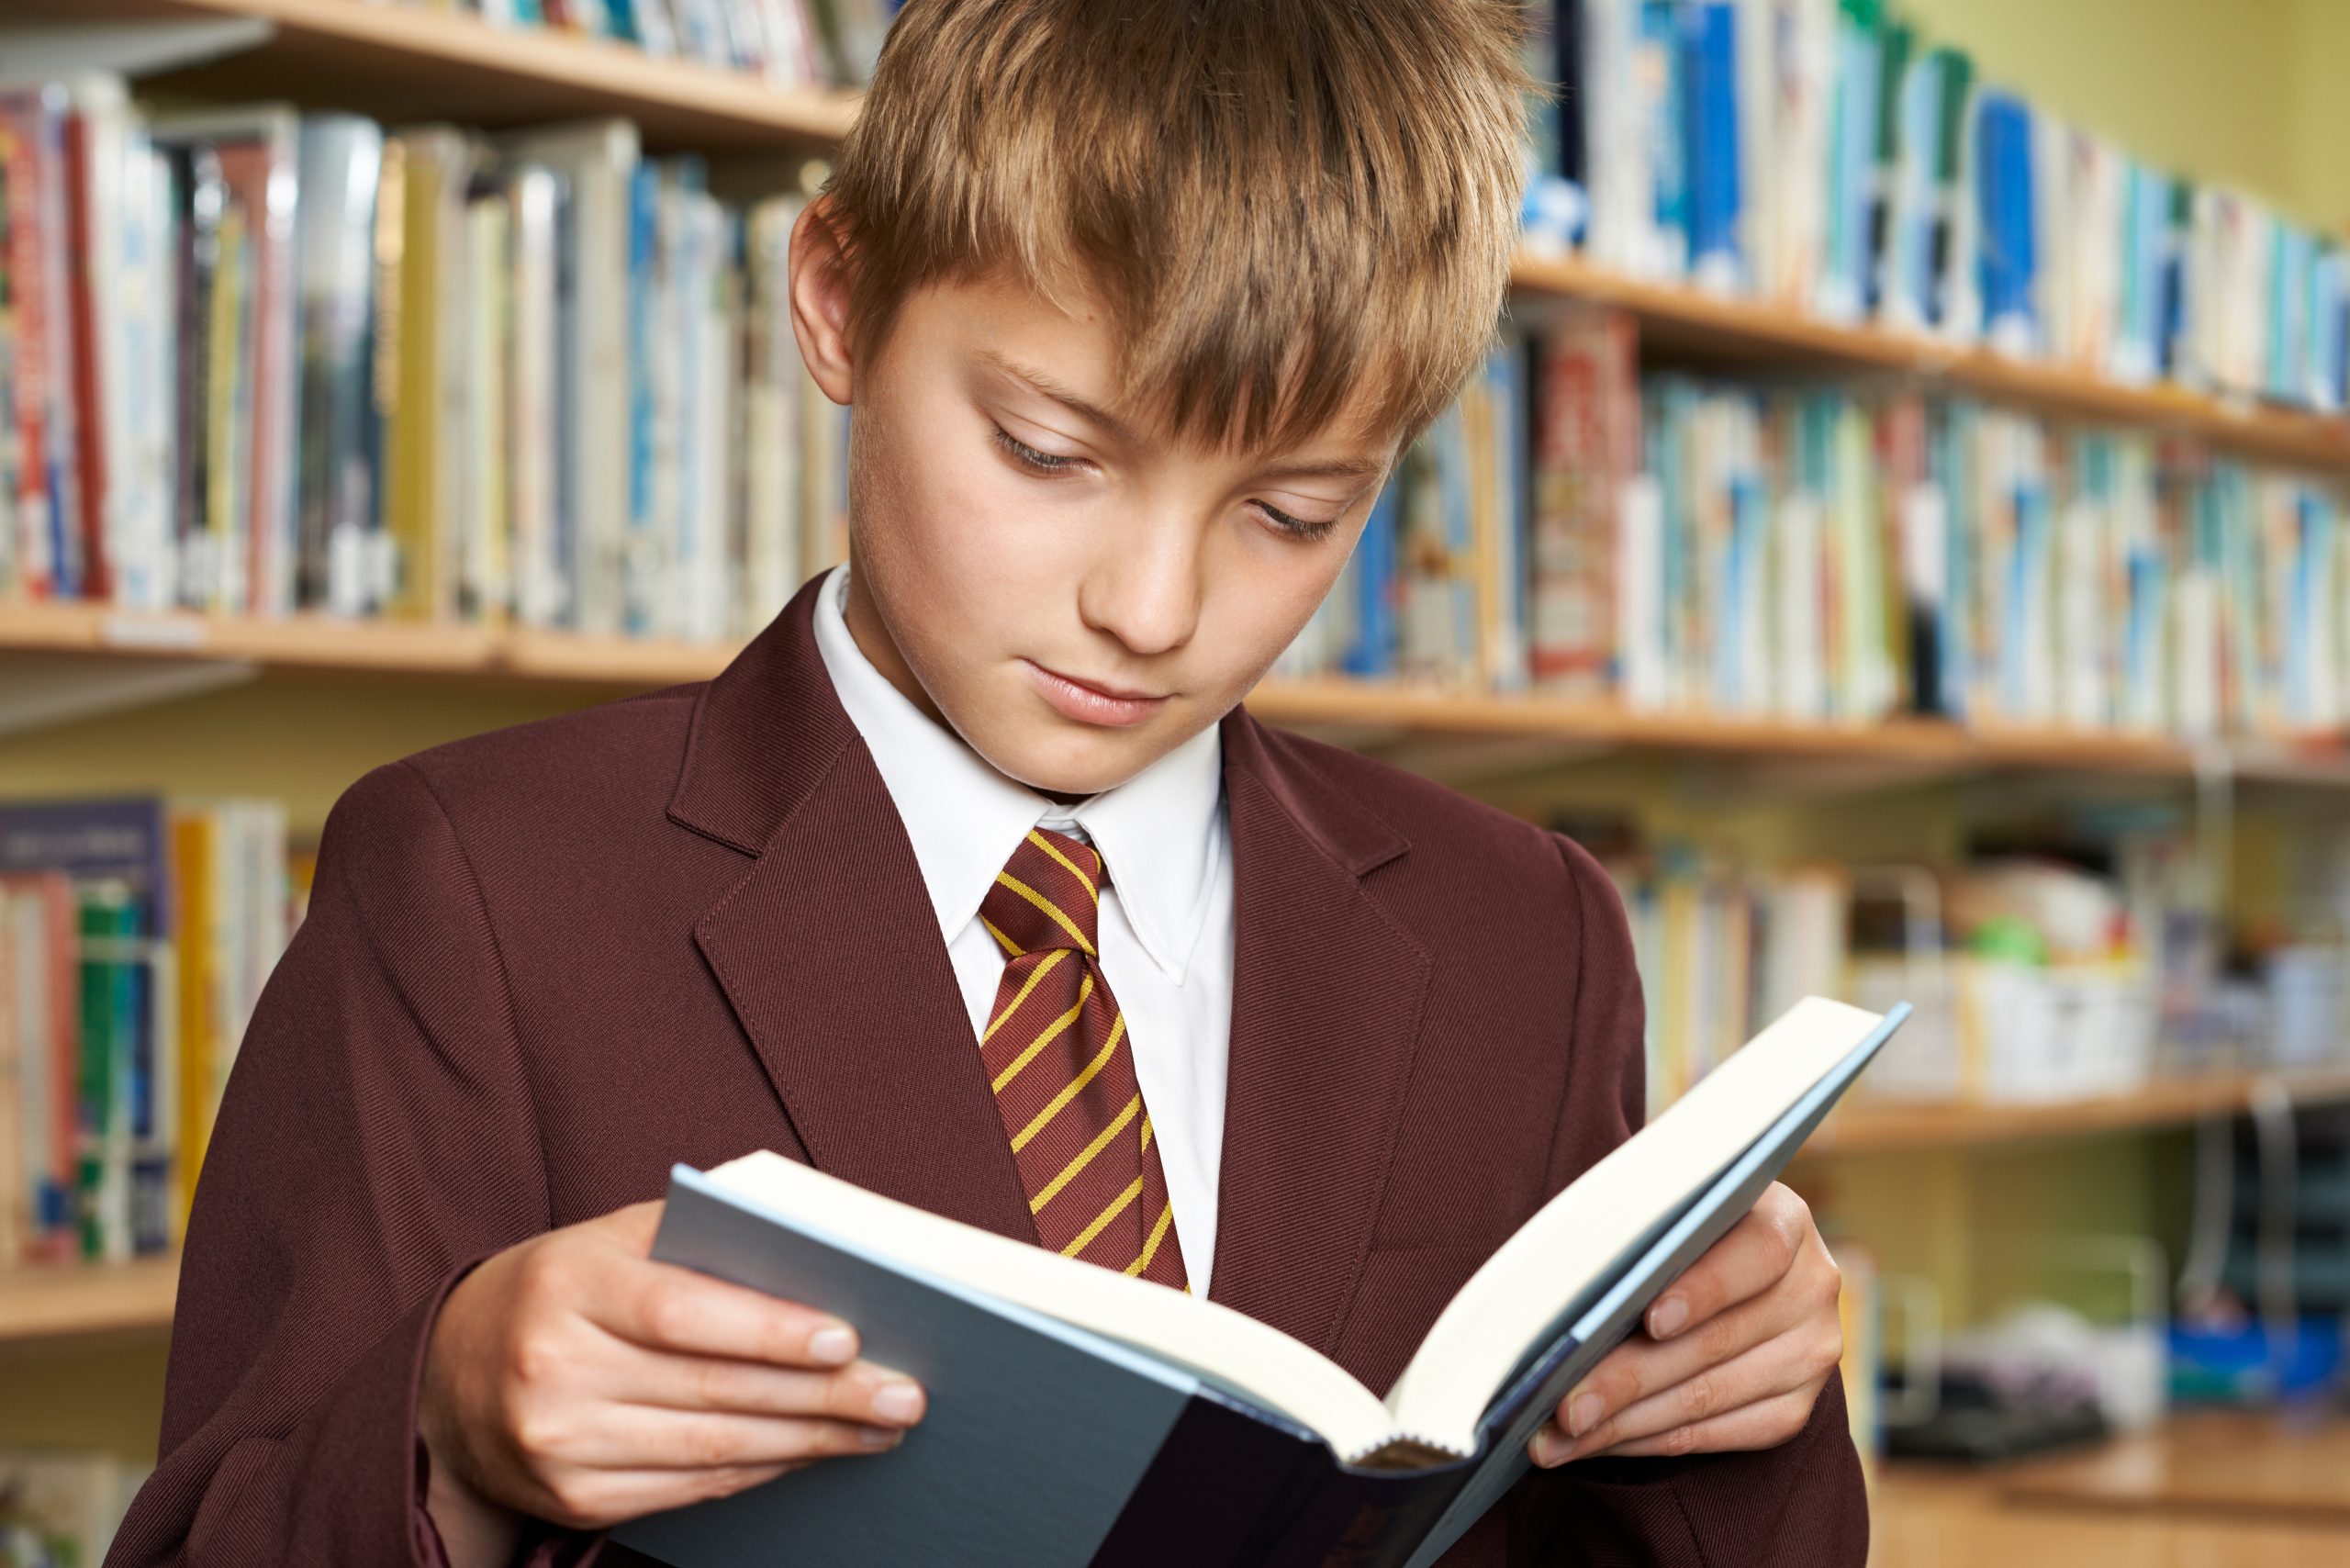 Boy wearing school uniform reading book in library